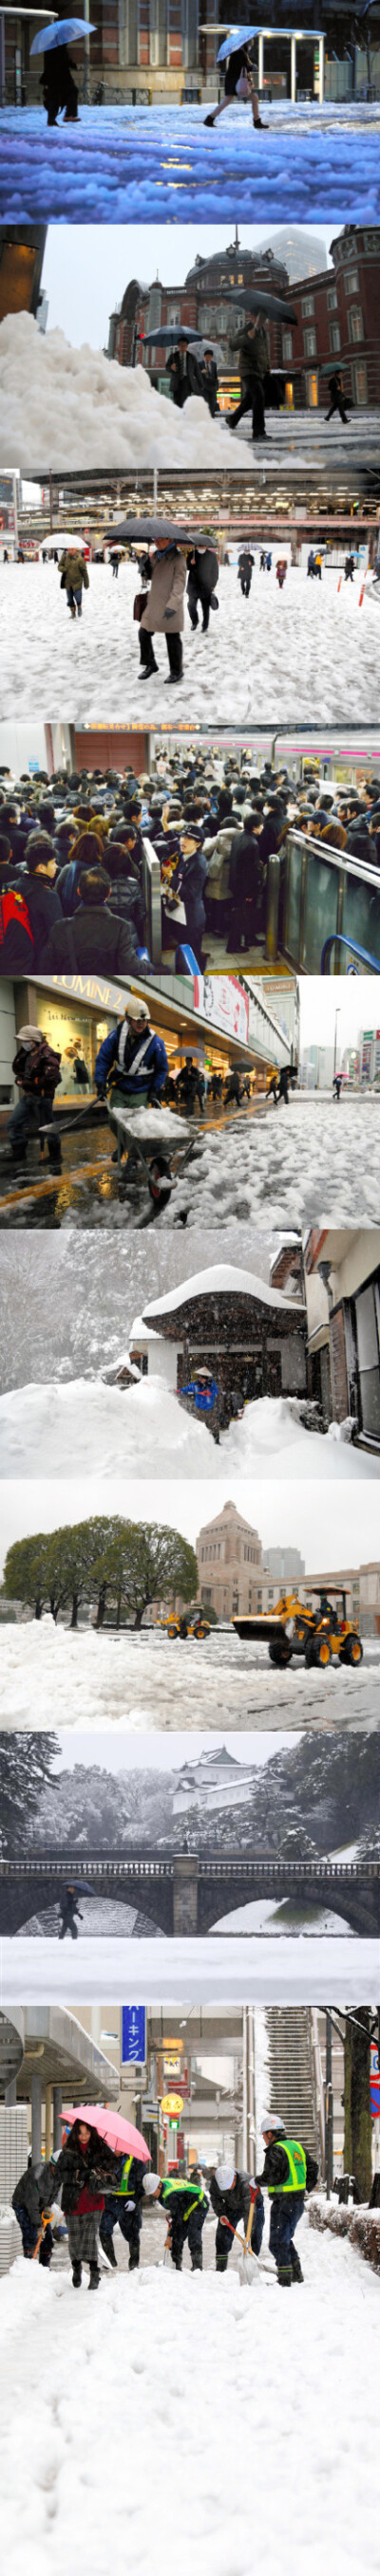 2016.01.18 / 生活：东京大雪，交通出现混乱。18日，关东甲信地区大范围降雪，此次降雪预计要持续到今天中午之后。东京都中心地区已逐渐由雪转变成雨夹雪。而今日晚到19日早晨可能再次迎来大雪。到早上10时，中央线…